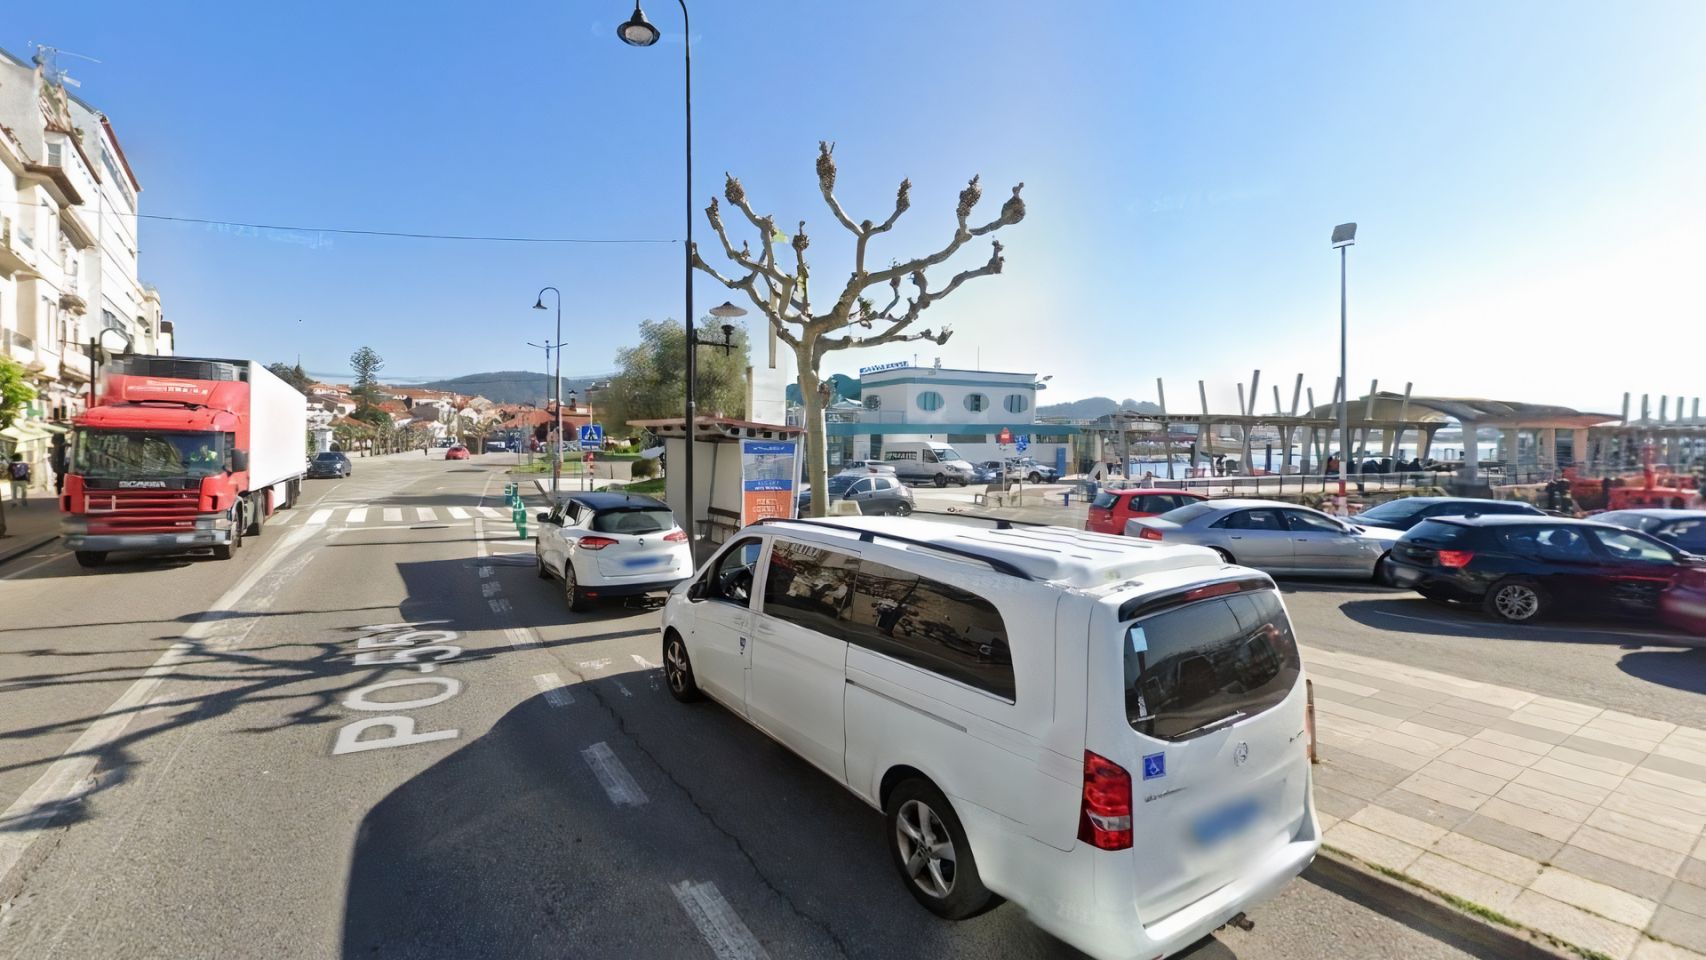 Parada de taxis en Cangas do Morrazo (Pontevedra).